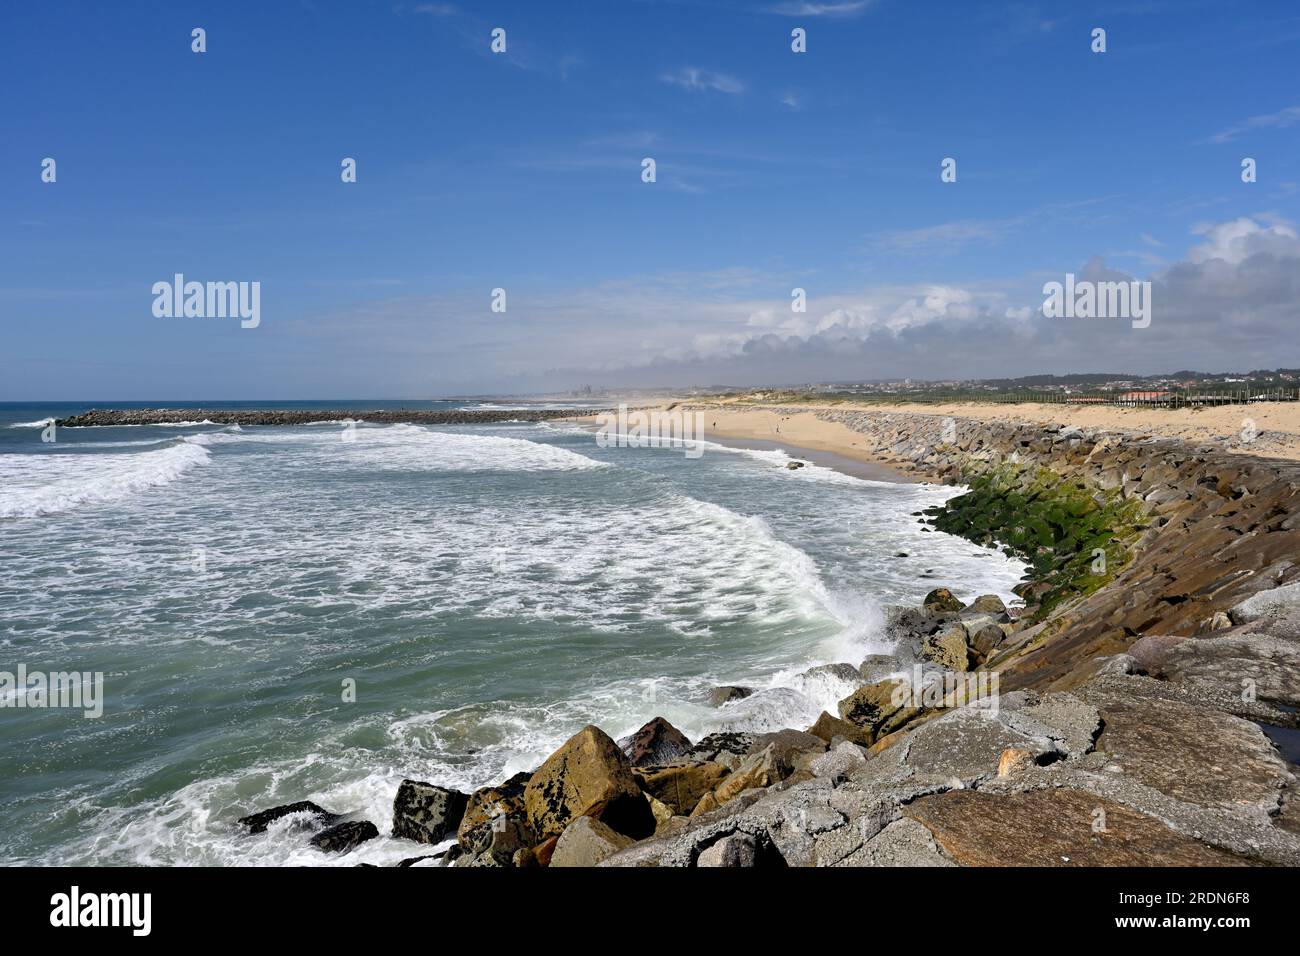 Praia de paramos, longue plage de sable avec des défenses marines en pierre par Barril, Espinho, Portugal Banque D'Images